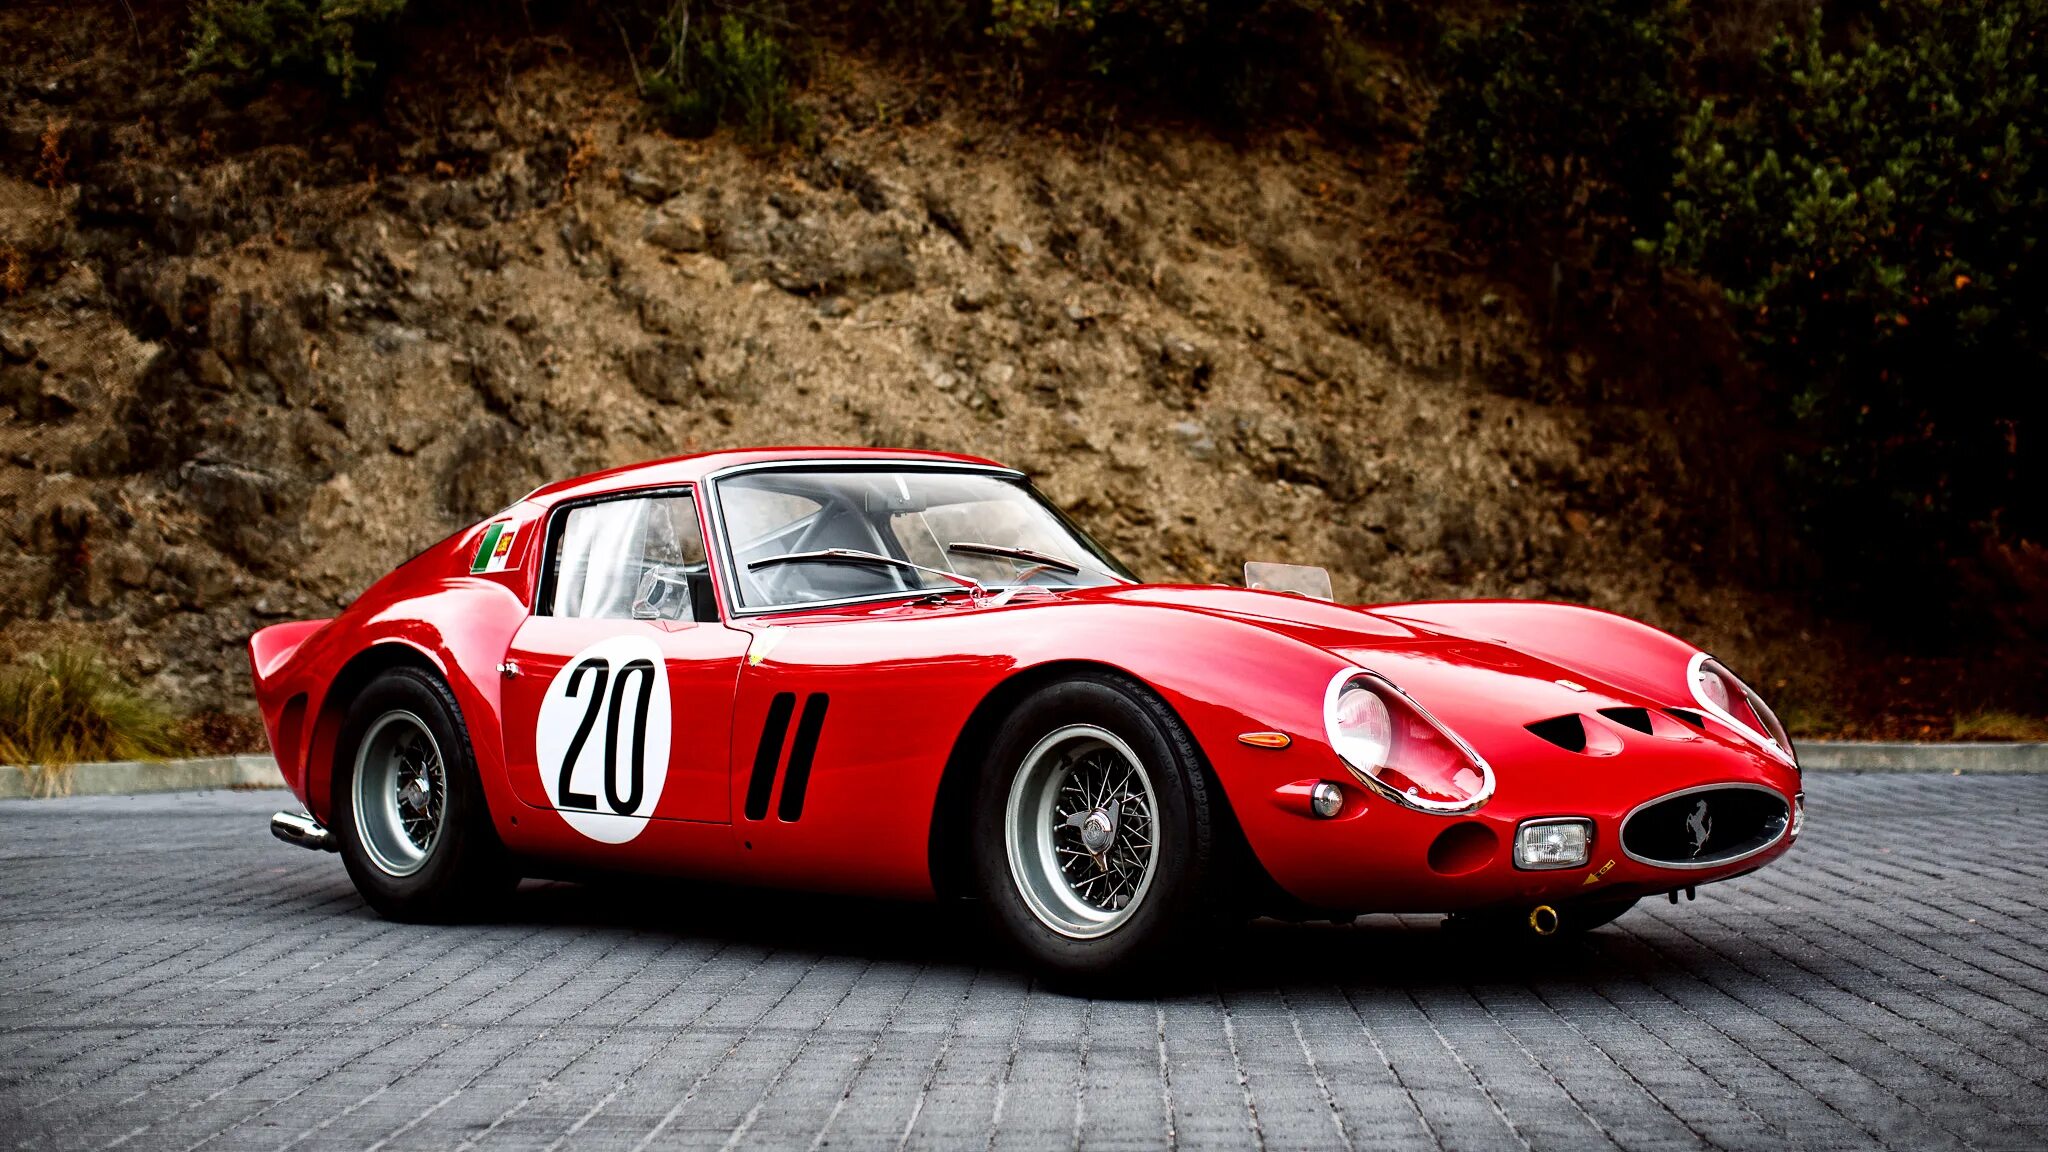 Ferrari 250 gto 1962. Ferrari 250 GTO. 1. Ferrari 250 GTO. Ferrari 250 GTO 1963.